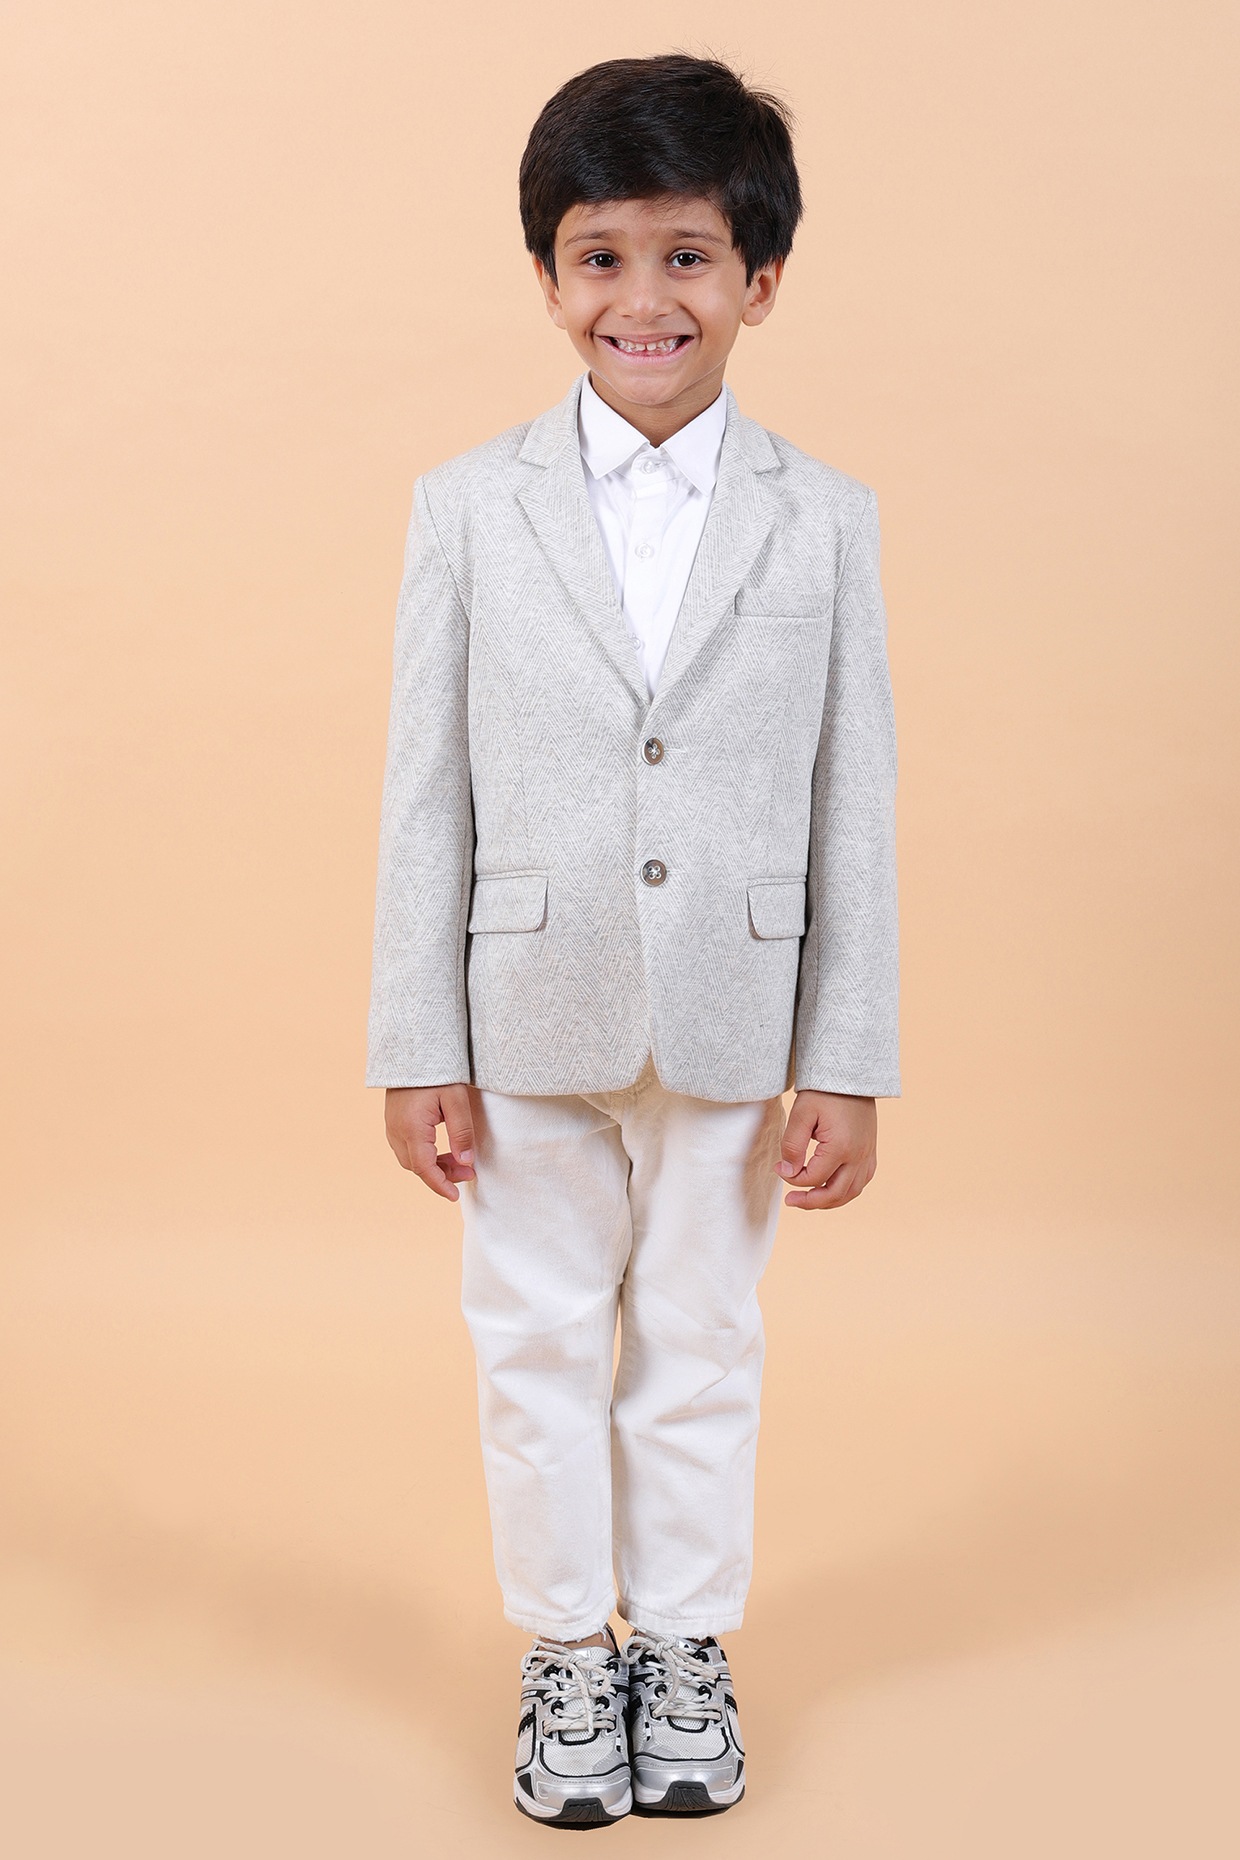 Little Gentleman Suit Jacket: Boys Suit Jacket Pattern, Boys Blazer  Pattern, Boys Suit Coat Pattern - Etsy